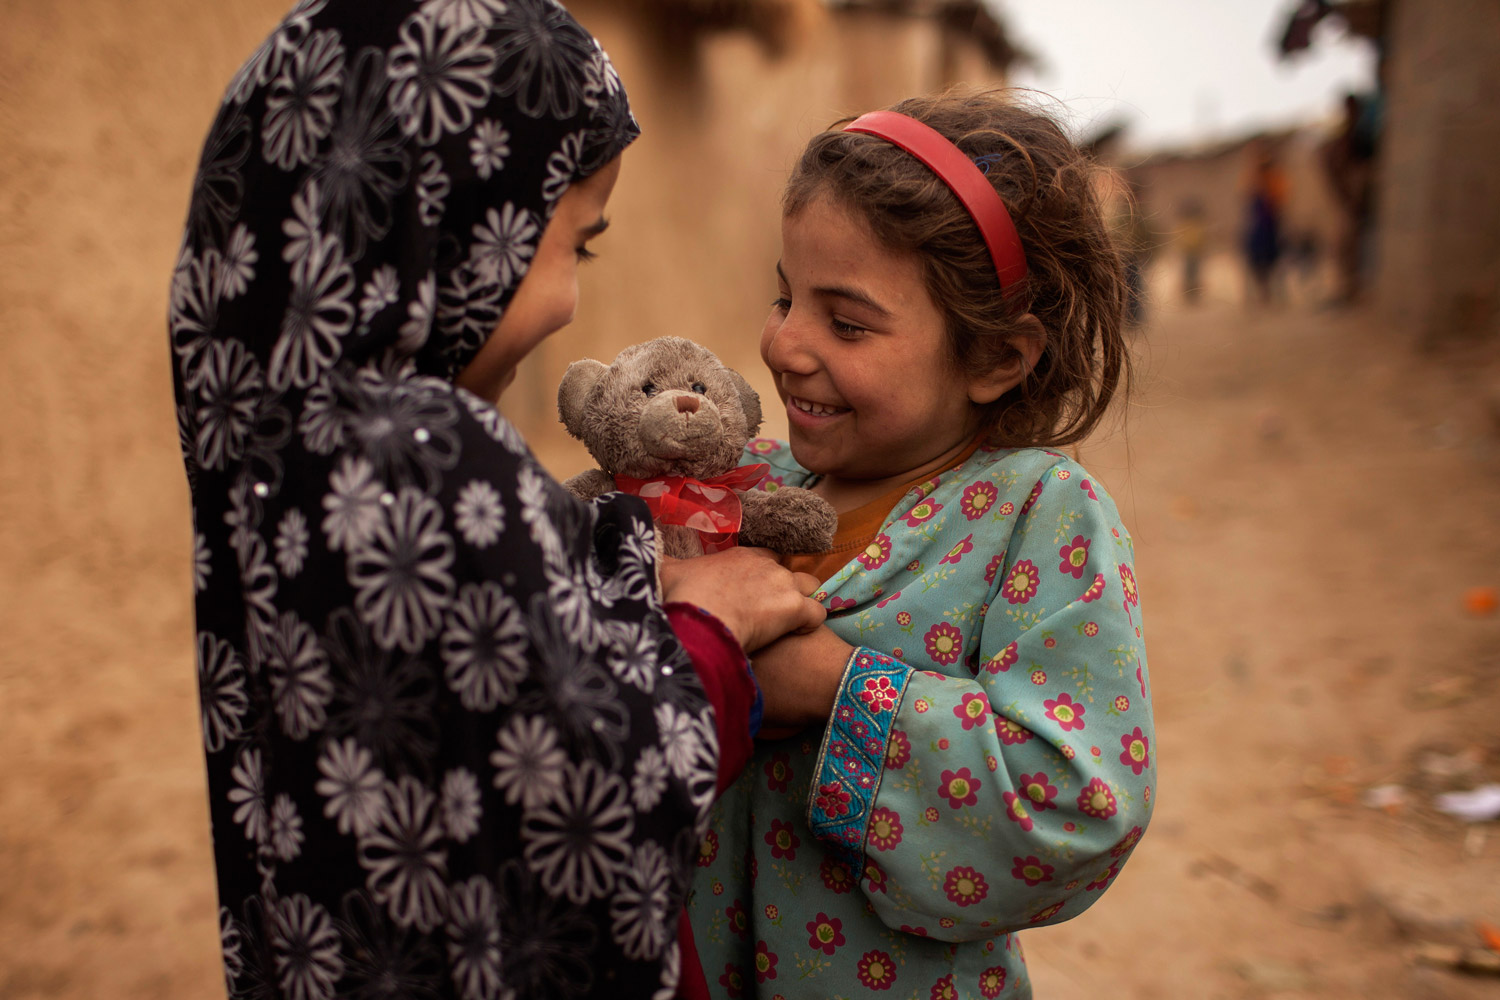 Las familias protegen a sus niñas en Afganistán criándolas y vistiéndolas como si fueran niños